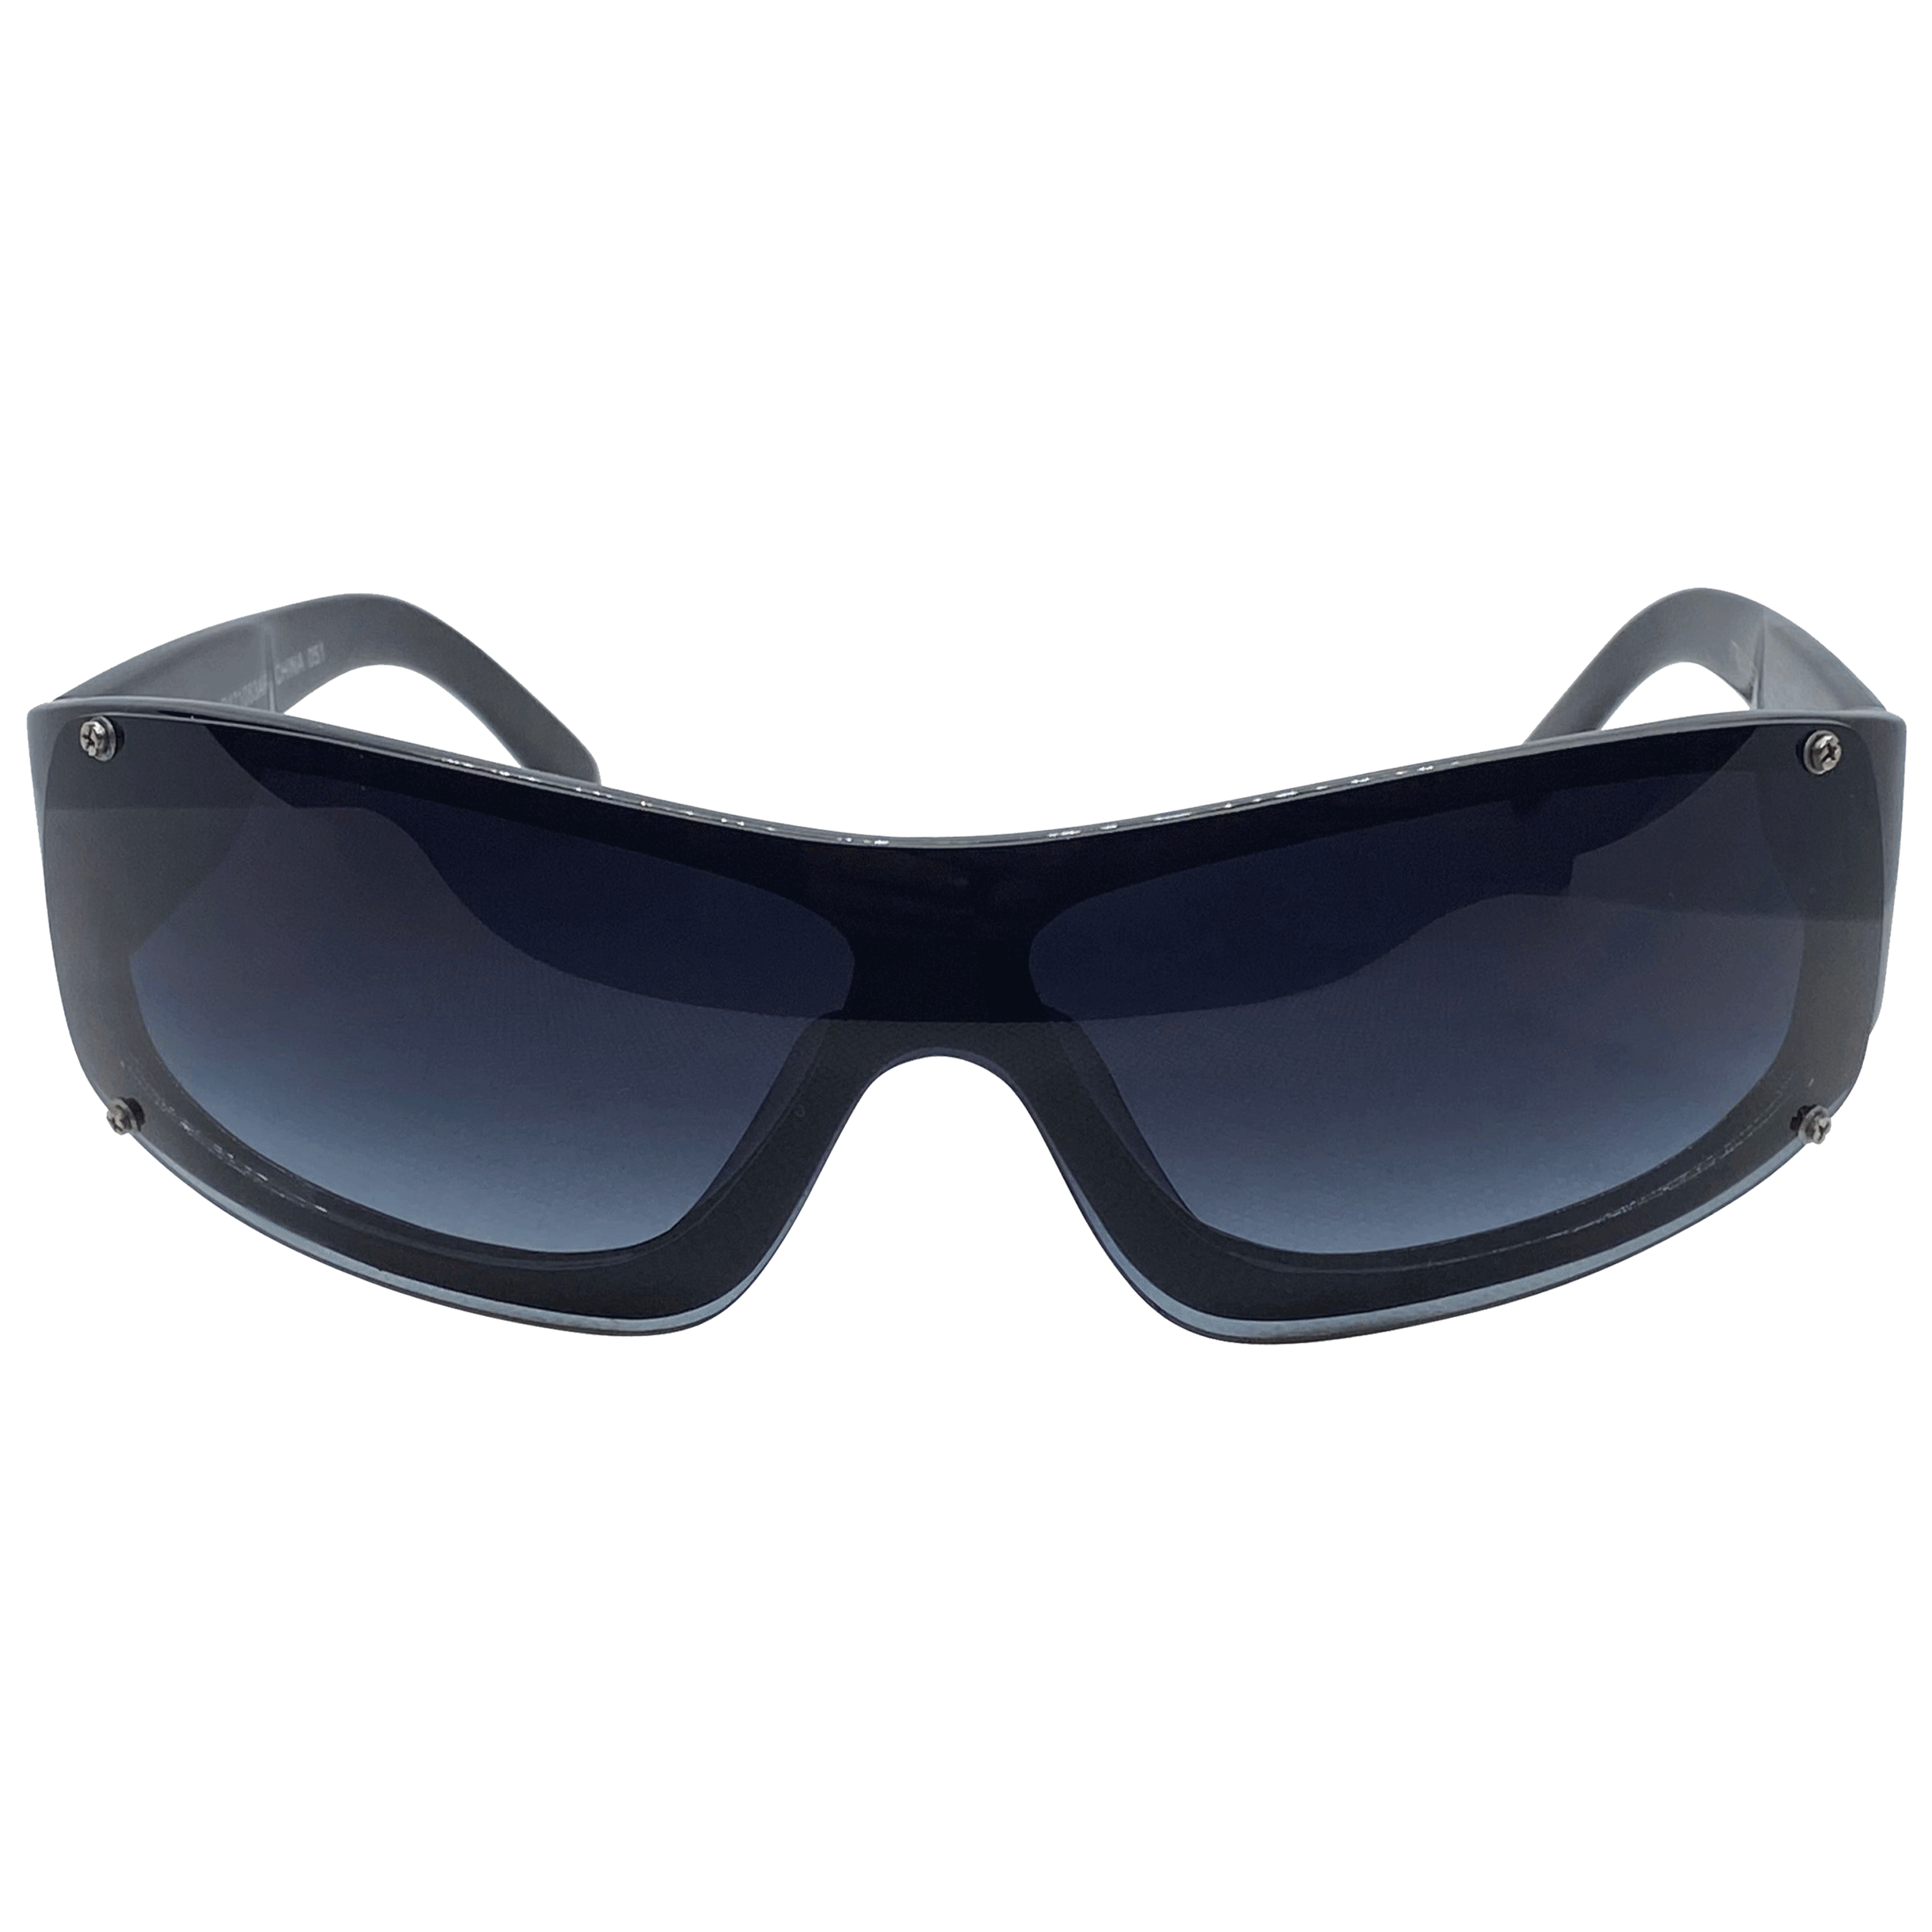 GONZALEZ Smoke Sports Sunglasses